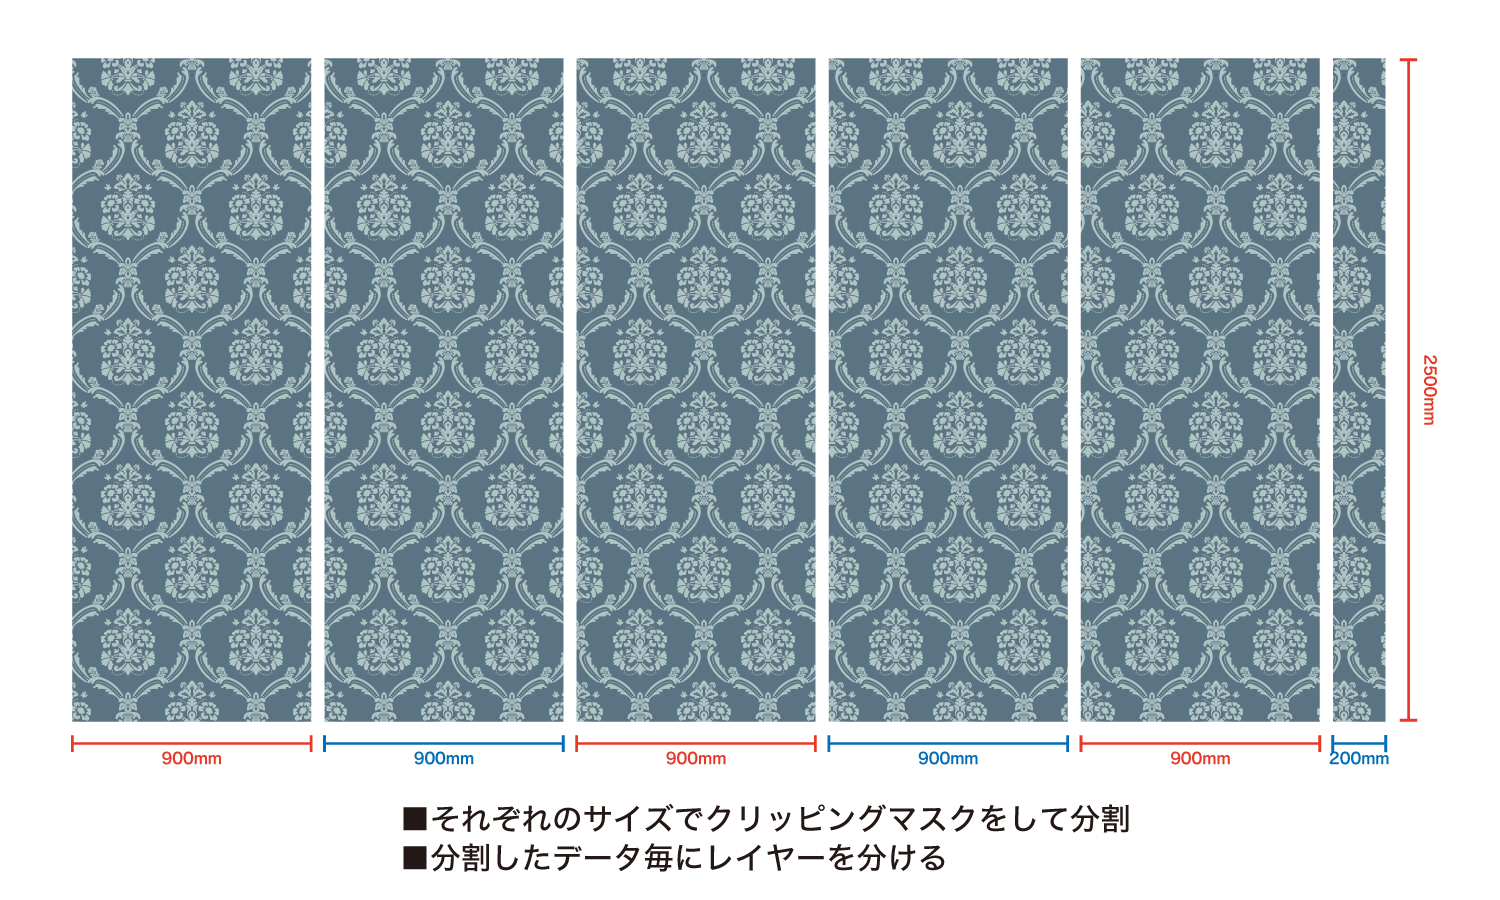 オリジナル壁紙印刷の分割方法